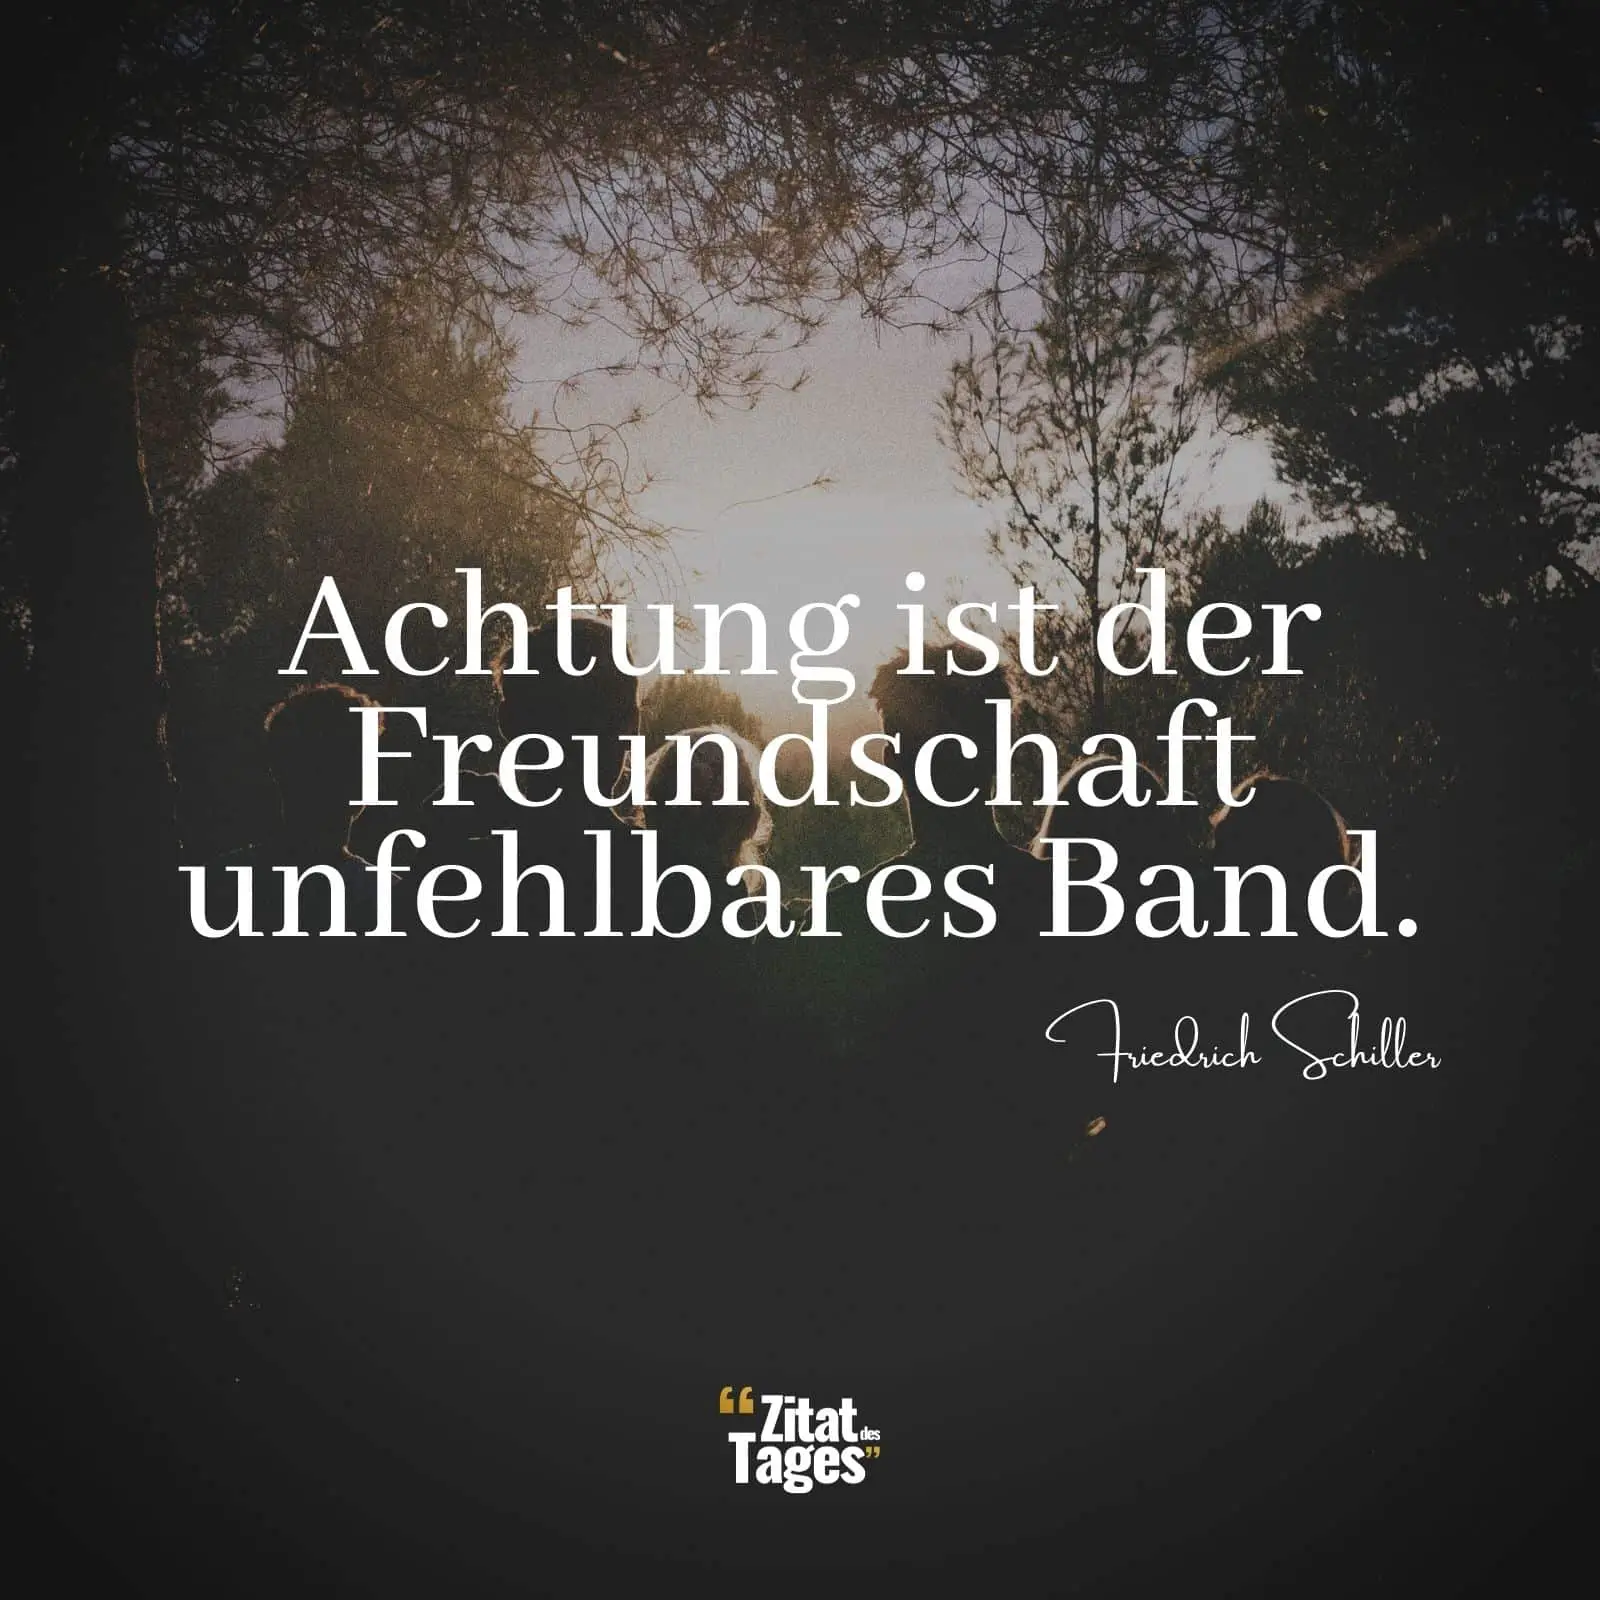 Achtung ist der Freundschaft unfehlbares Band. - Friedrich Schiller